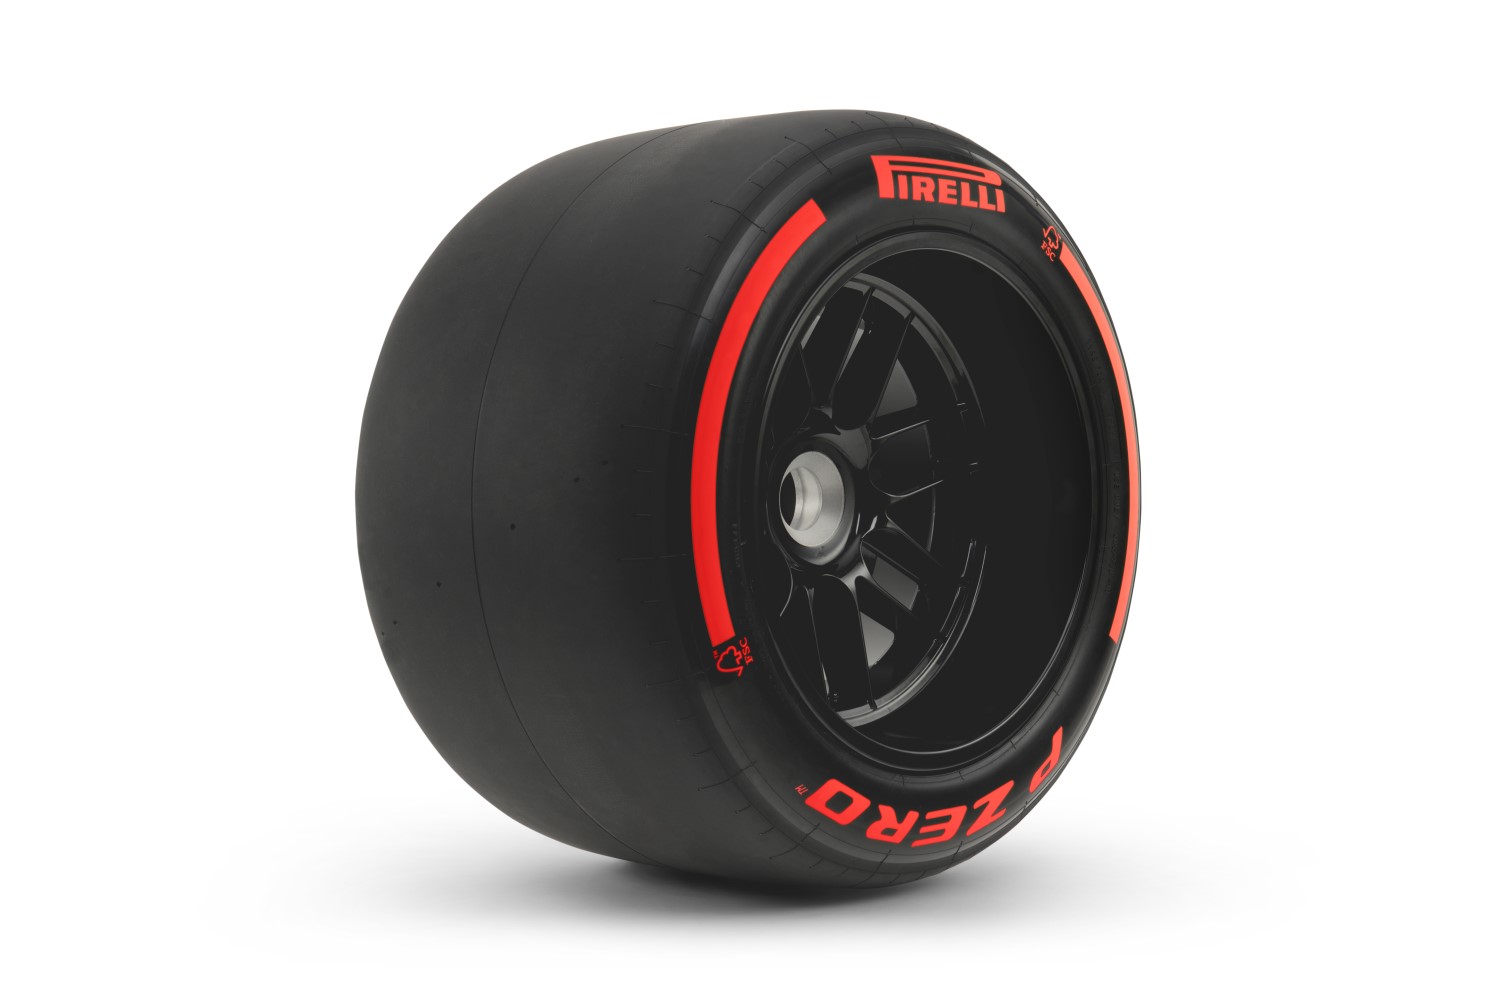 Pirelli F1 Soft Tire